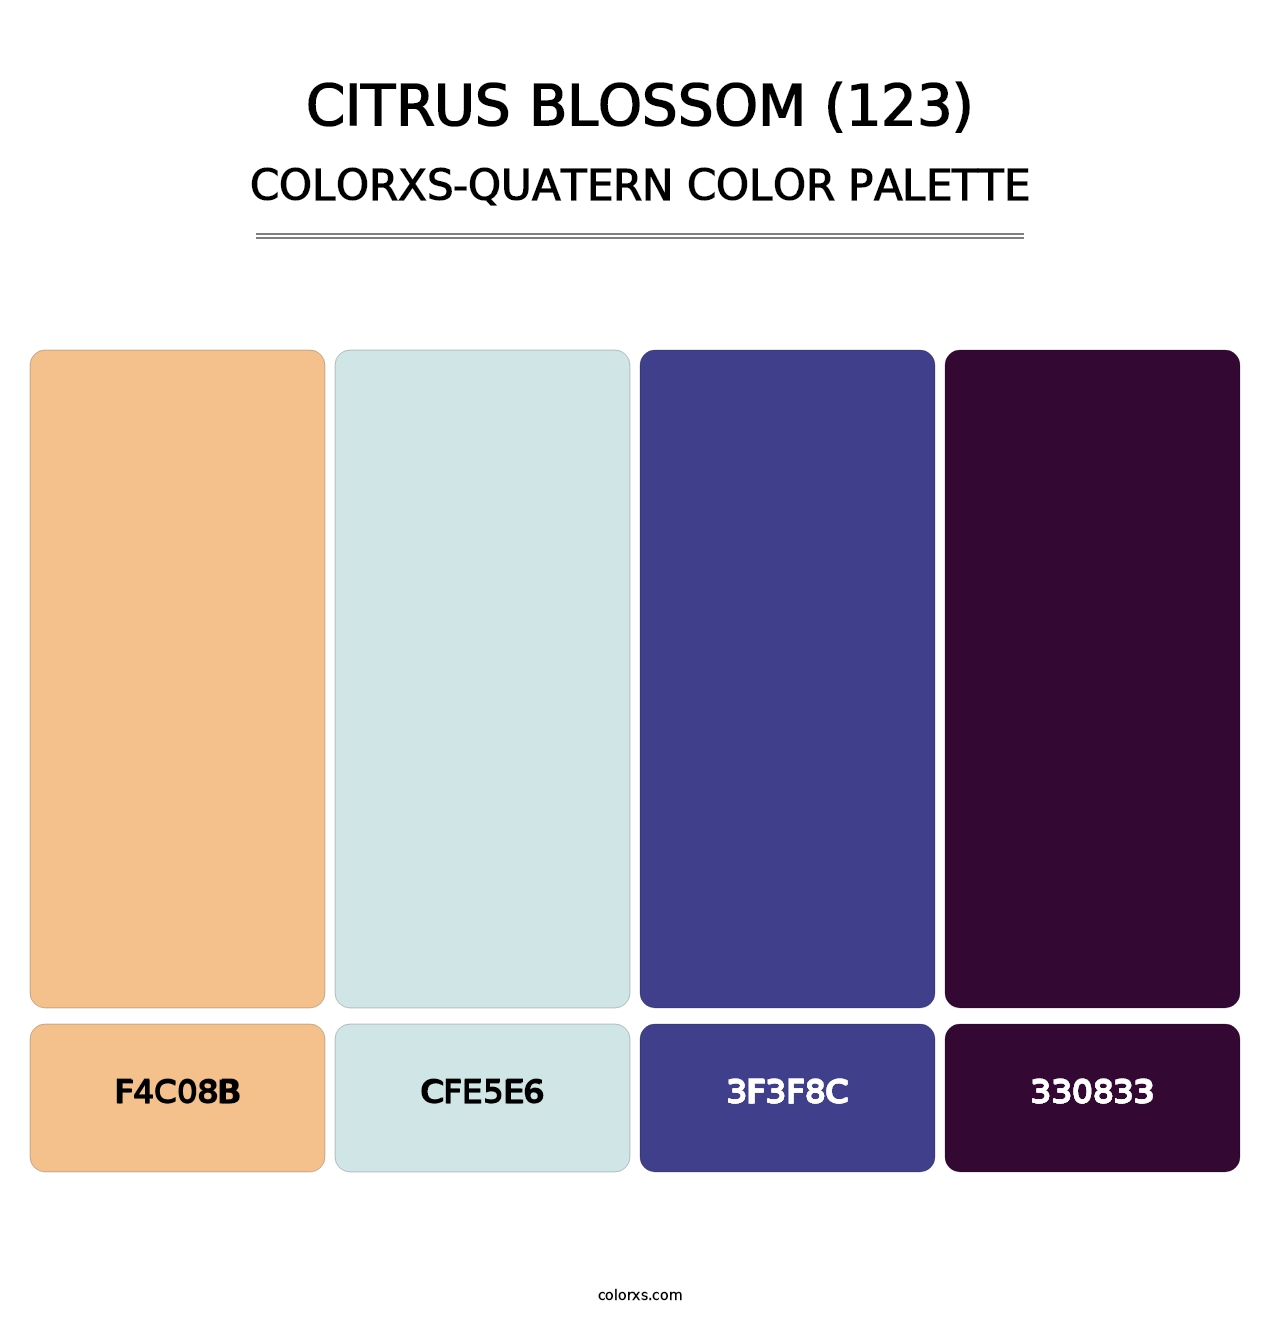 Citrus Blossom (123) - Colorxs Quatern Palette